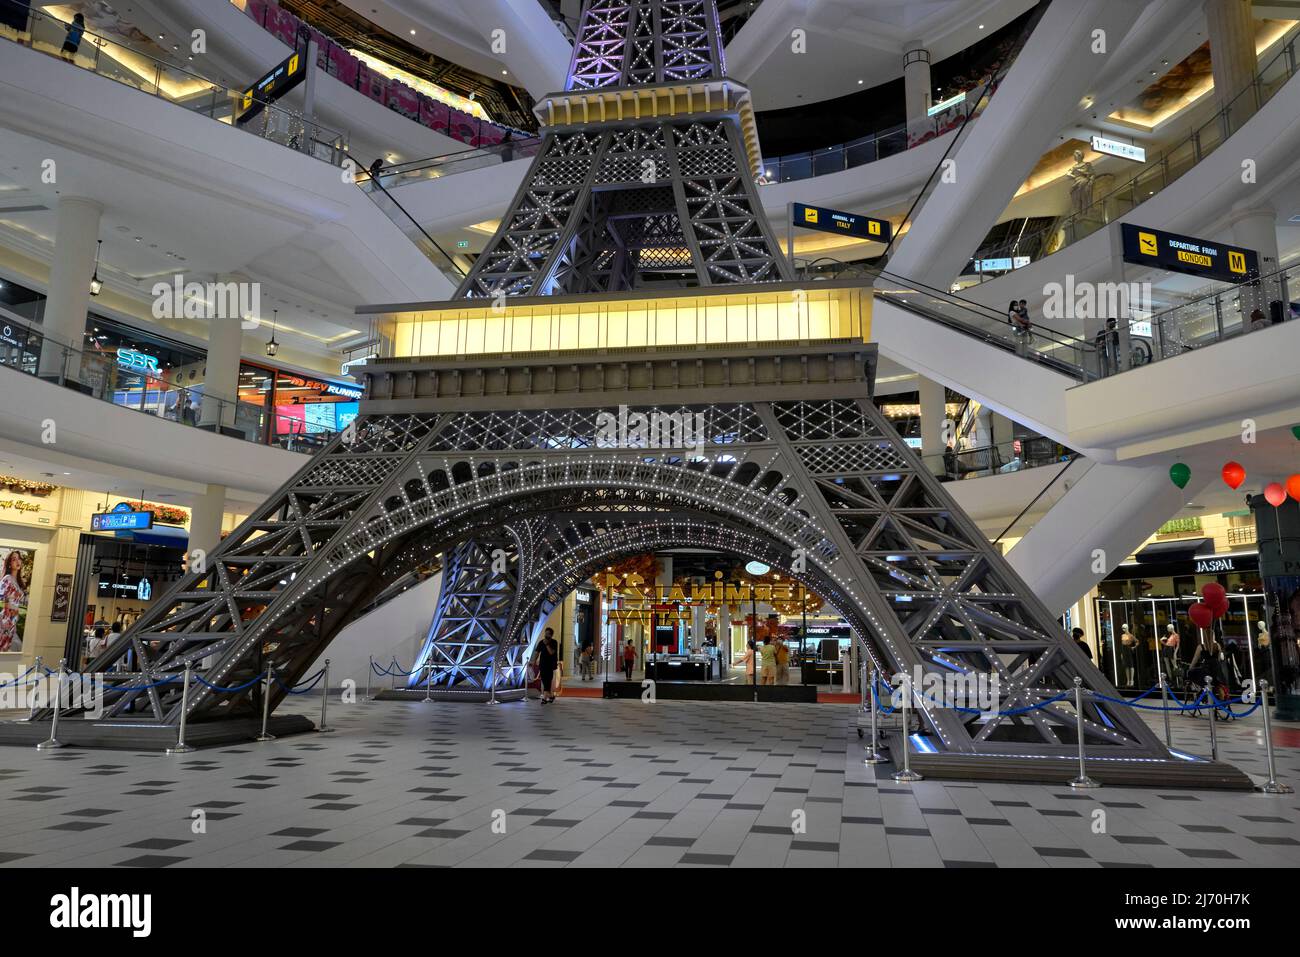 Architecture intérieure du centre commercial. Réplique de la tour Eiffel dans le centre commercial à thème terminal 21, Pattaya, Thaïlande, Asie Banque D'Images